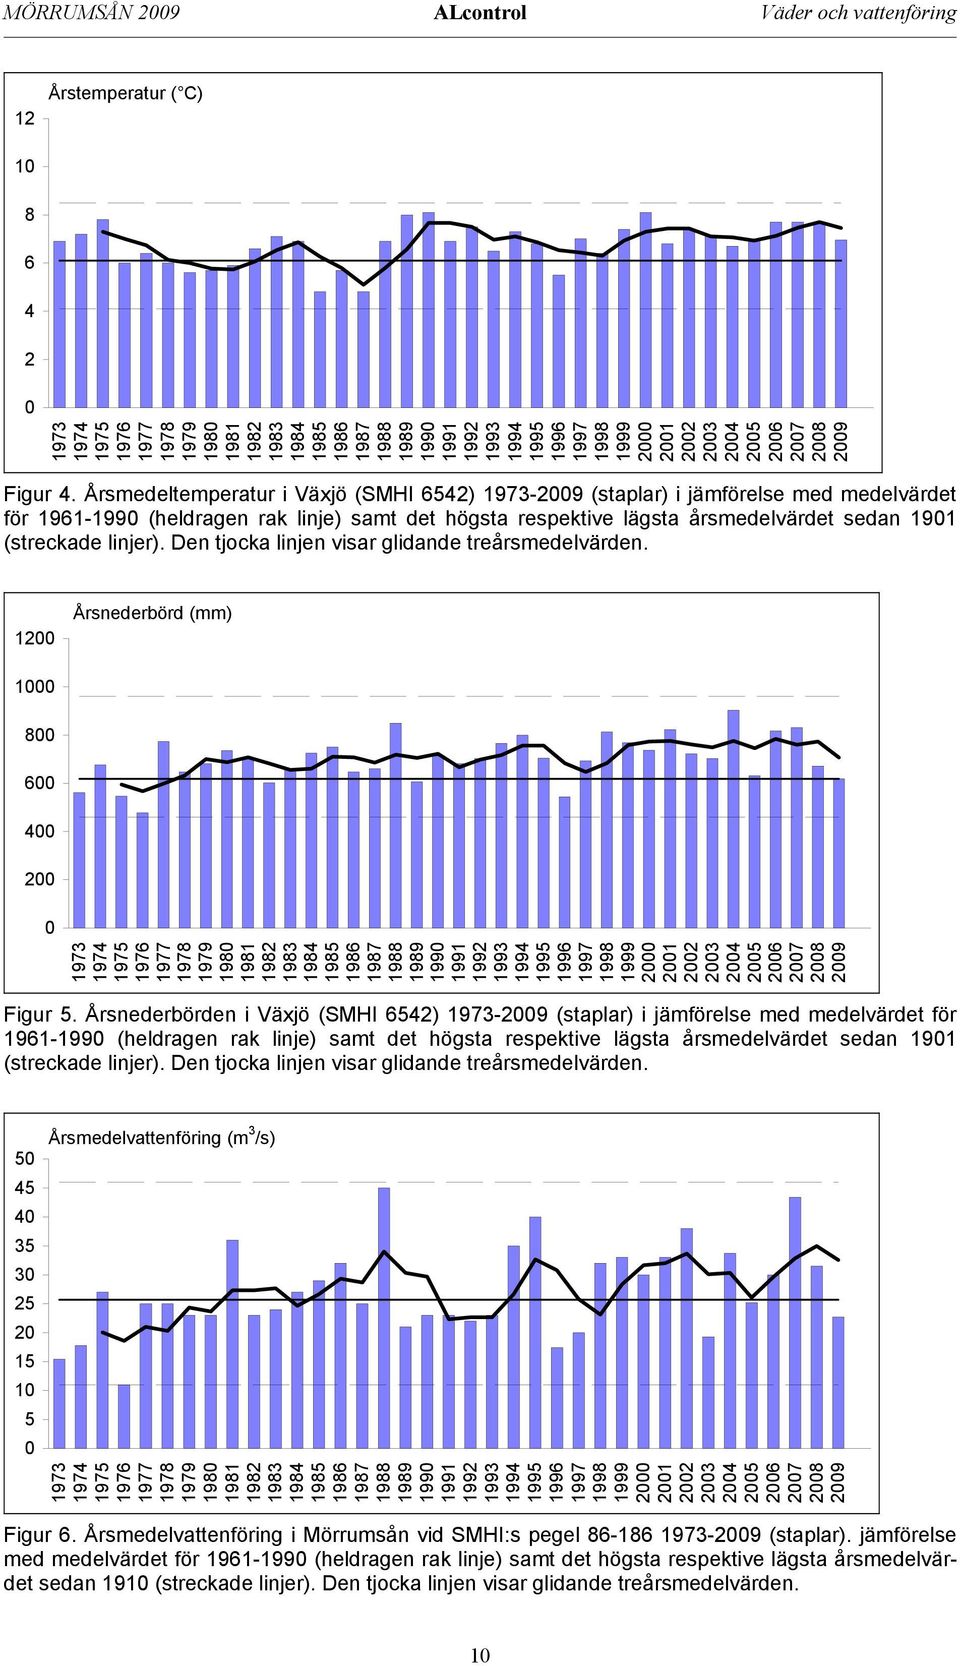 Årsmedeltemperatur i Växjö (SMHI 6542) 1973-2009 (staplar) i jämförelse med medelvärdet för 1961-1990 (heldragen rak linje) samt det högsta respektive lägsta årsmedelvärdet sedan 1901 (streckade